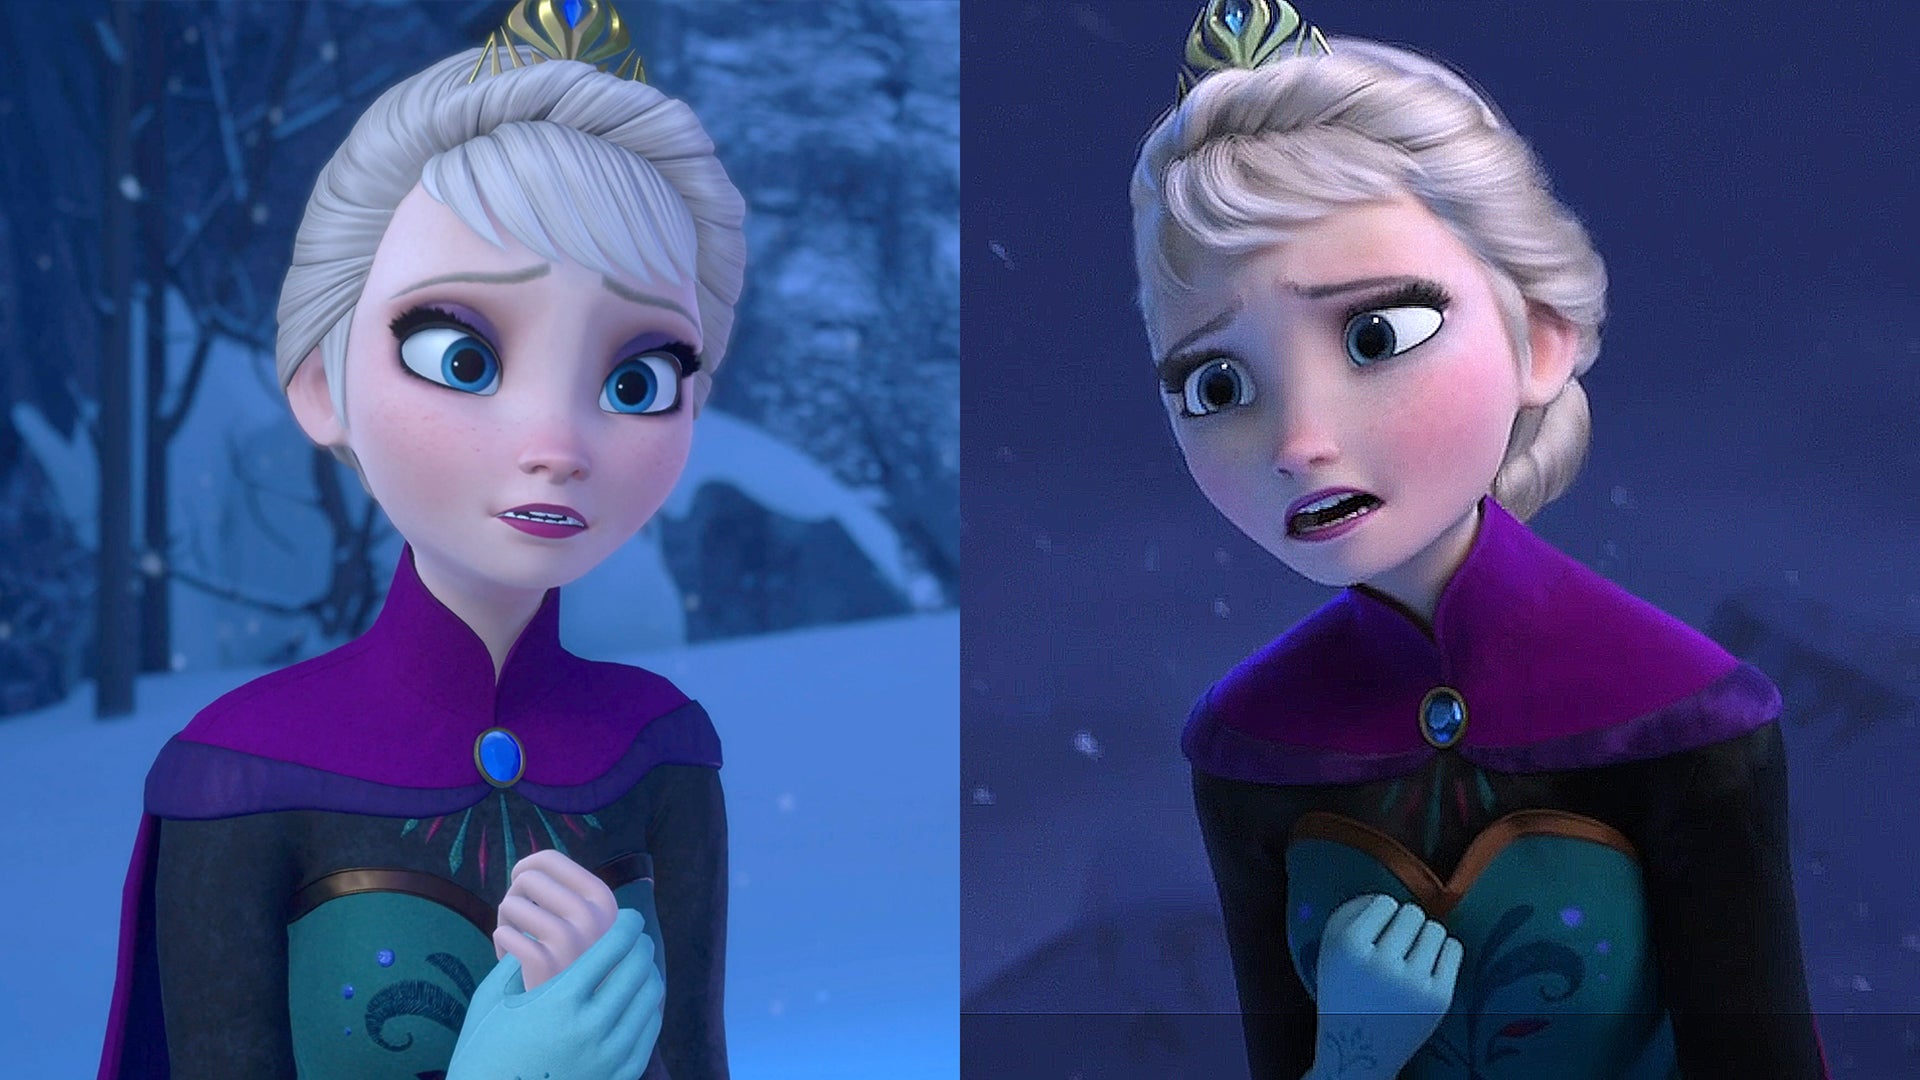 Image for Kingdom Hearts 3 vs Frozen! Graphics Comparison + E3 2018 Trailer Analysis